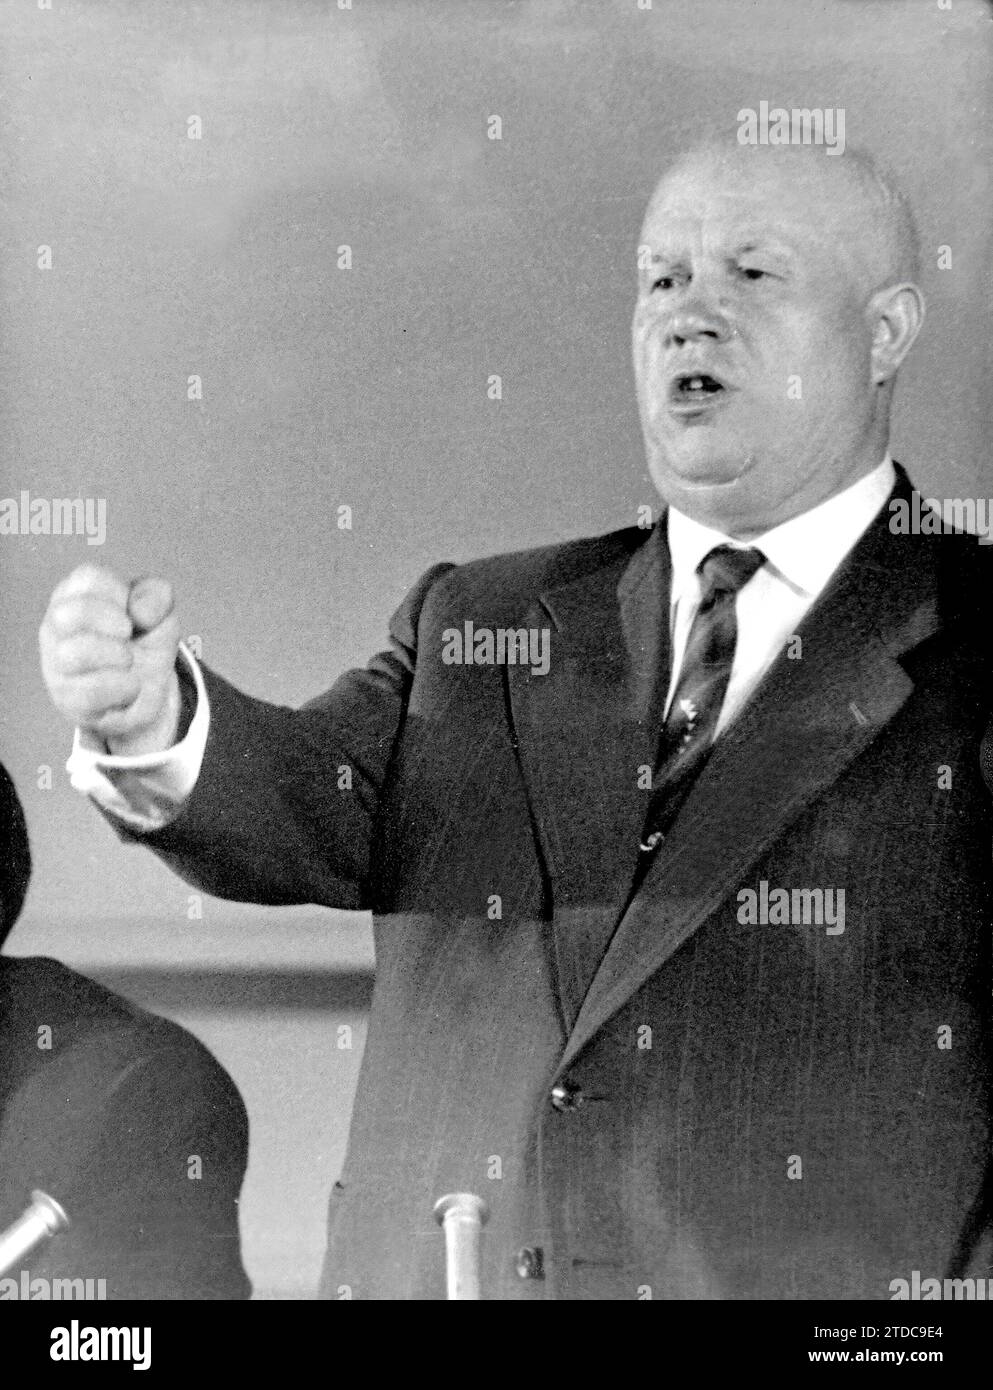 12/31/1959. Russian politician Nikita Khrushchev. Credit: Album / Archivo ABC / Torremocha Stock Photo